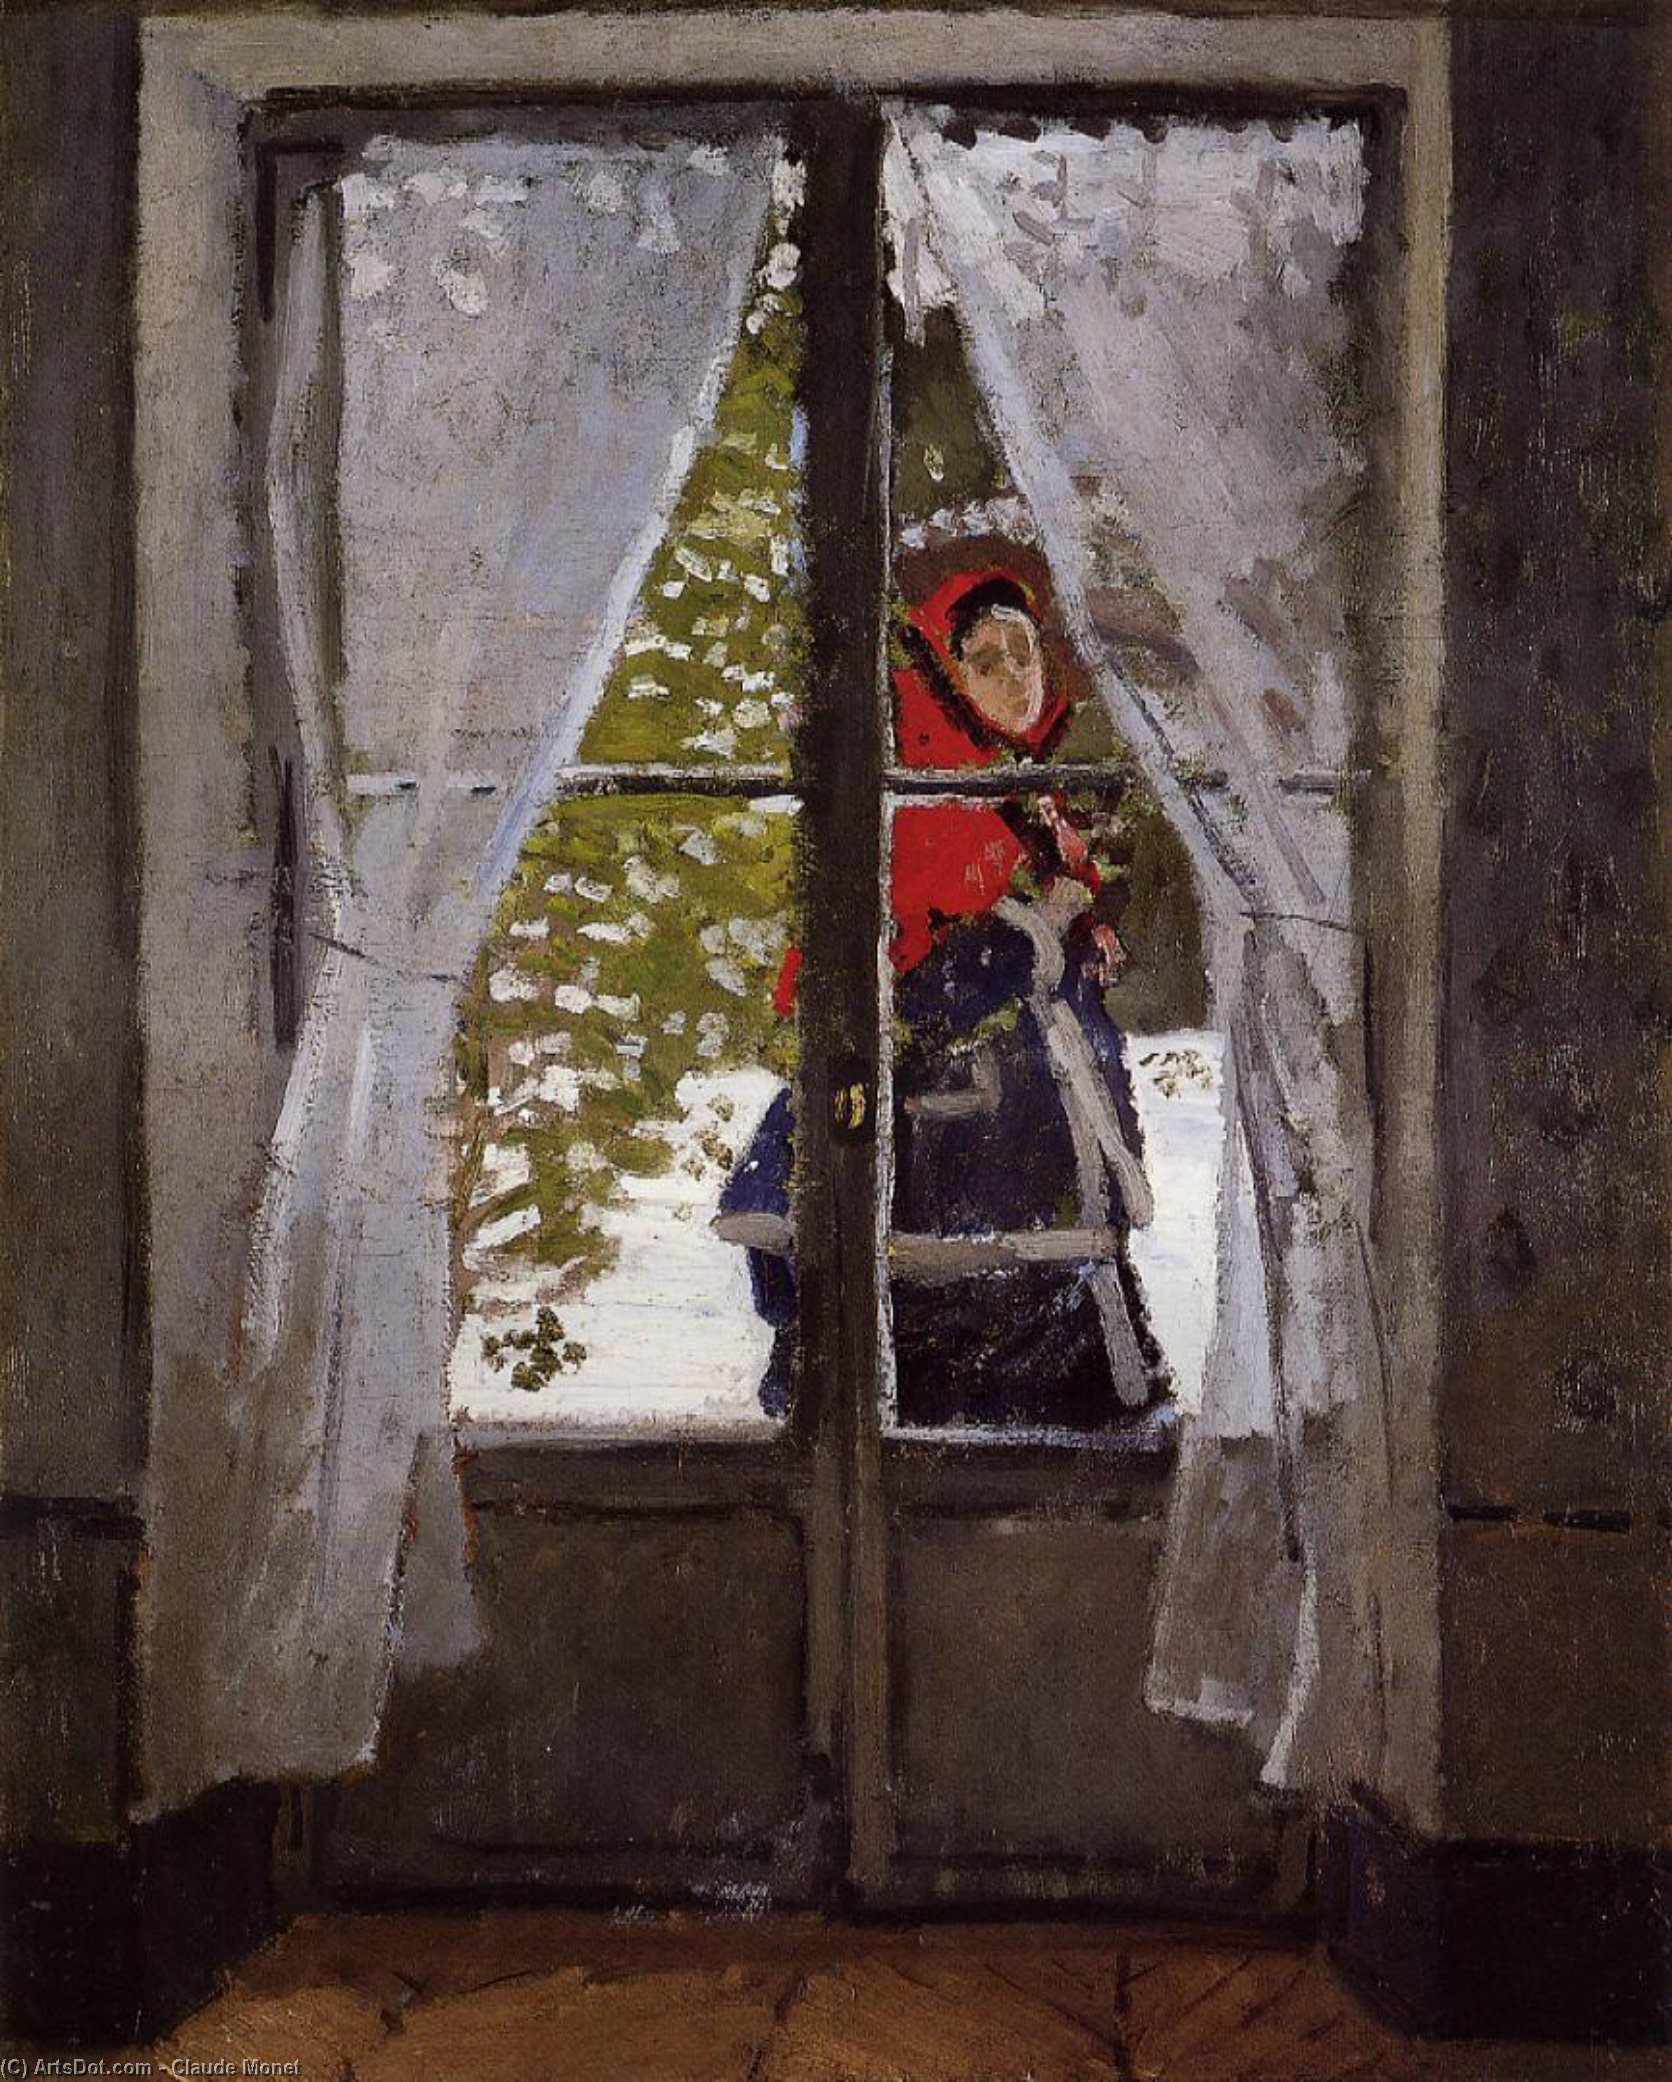 Ordinare Riproduzioni Di Quadri Il Kerchief rosso, Ritratto di Madame Monet, 1873 di Claude Monet (1840-1926, France) | ArtsDot.com